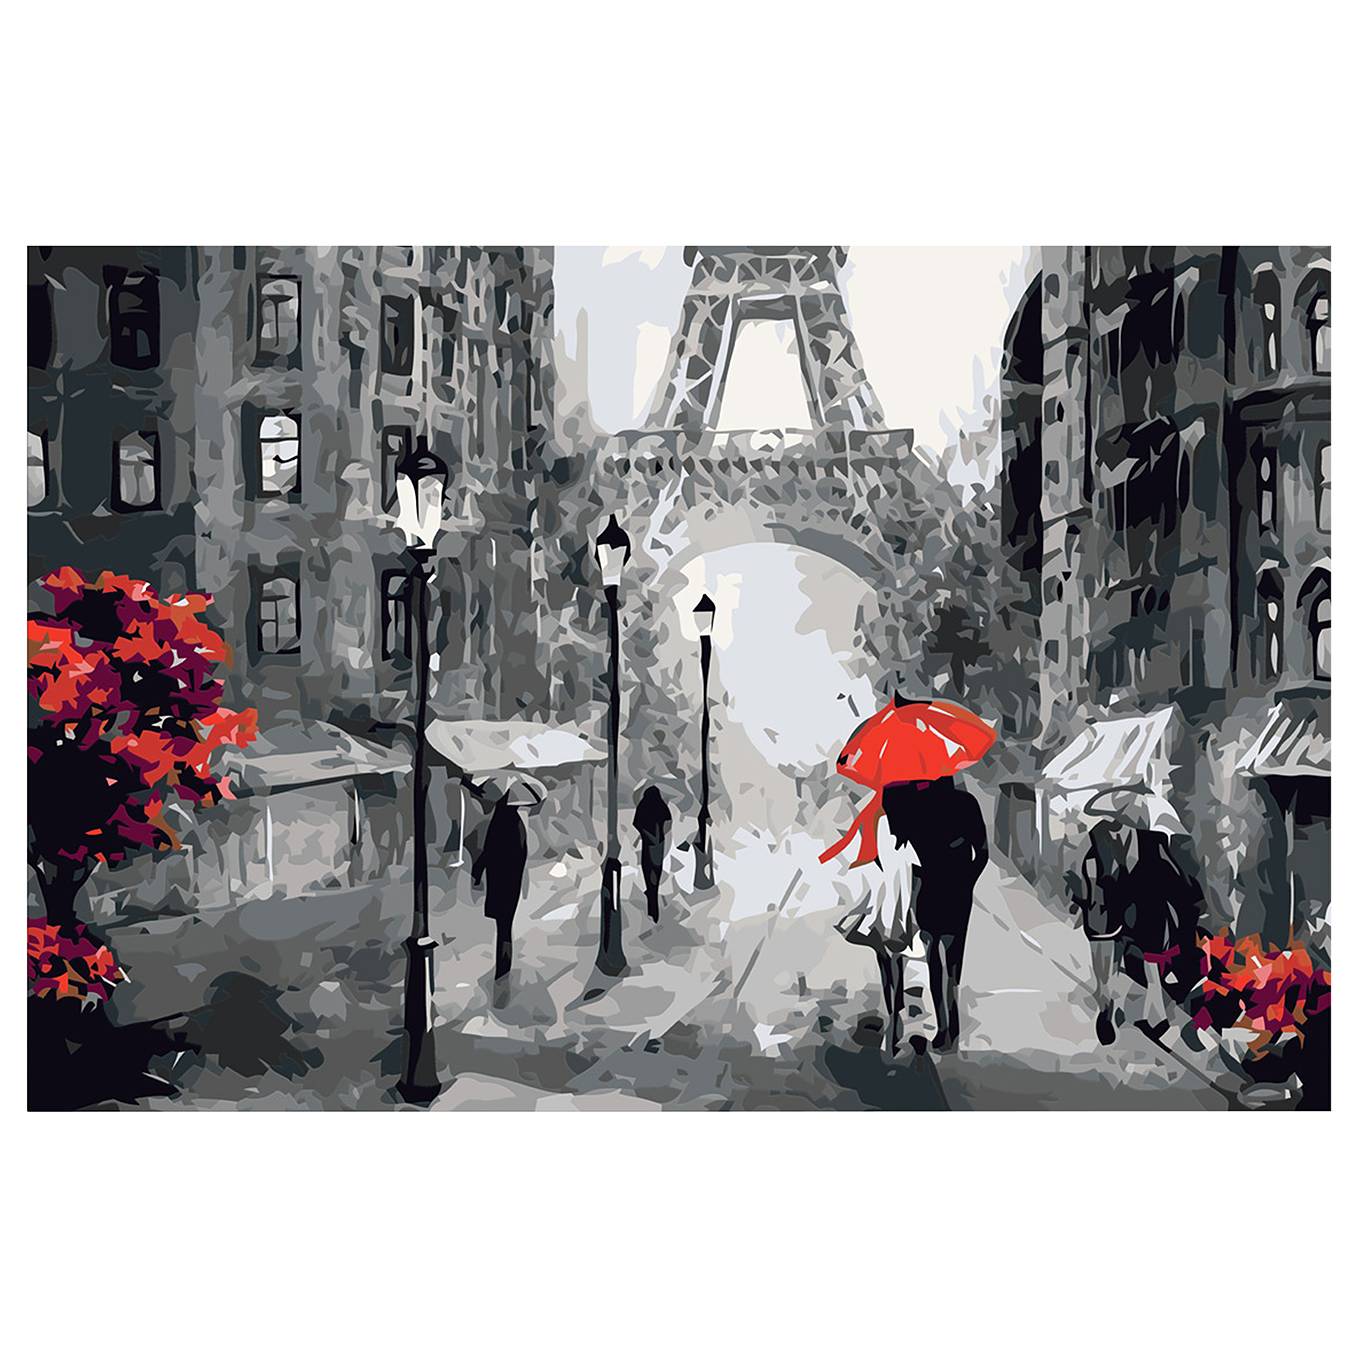 Malen nach Zahlen - Verliebt in Paris kaufen | home24